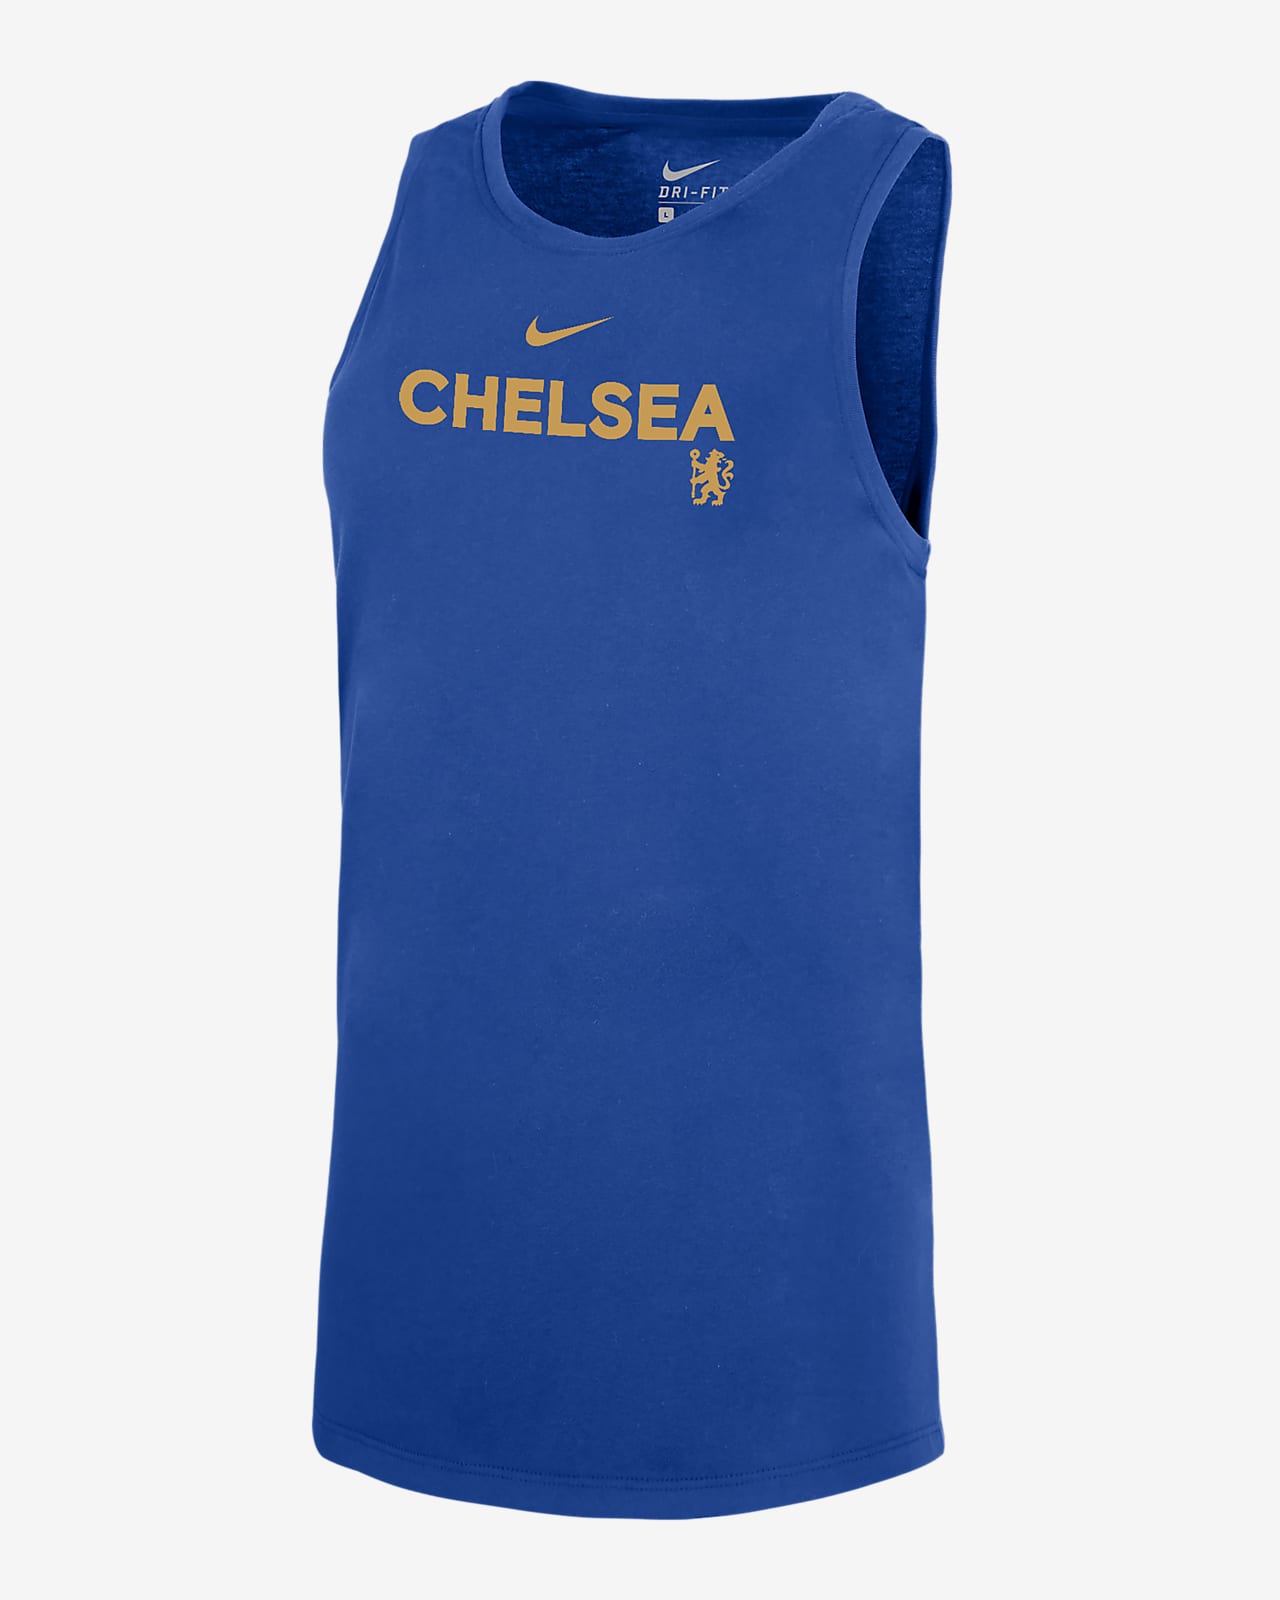 Chelsea FC Women's Nike Dri-FIT Soccer Tank Top